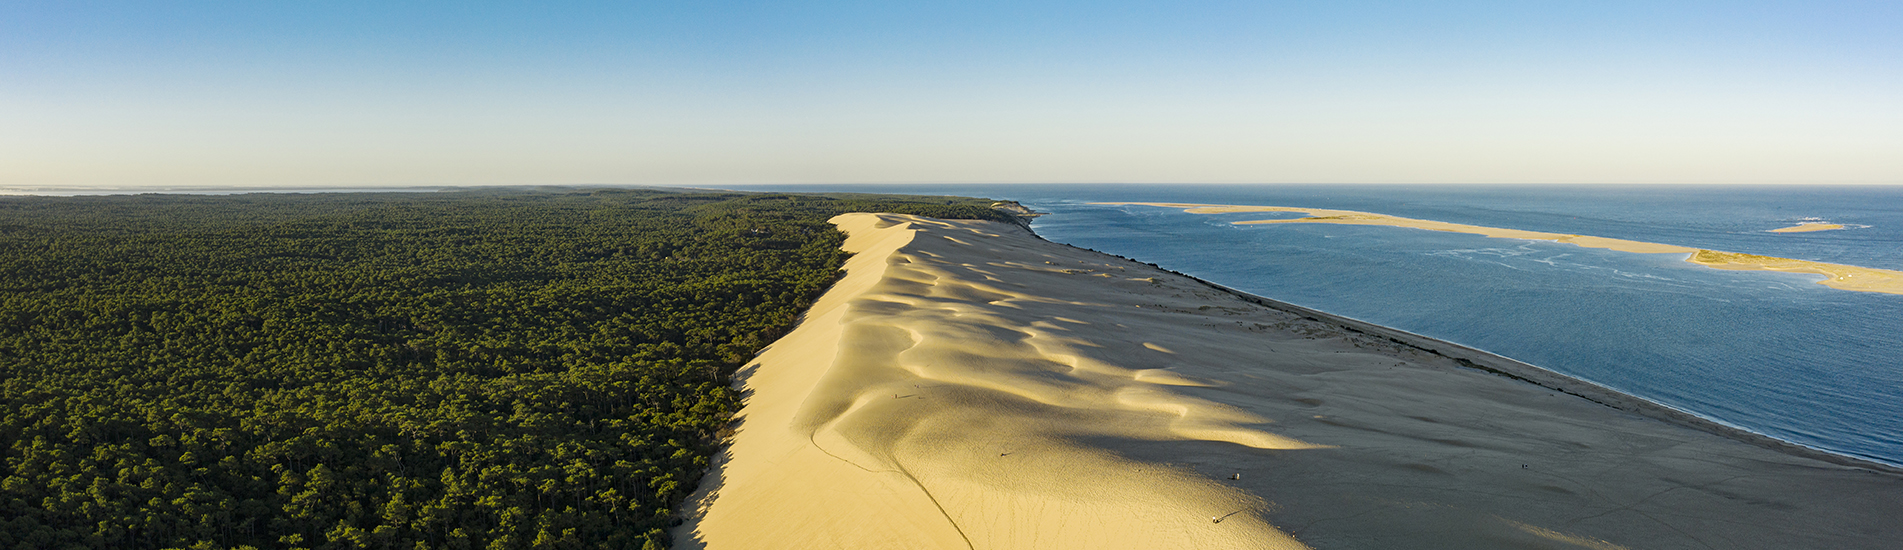 Vue aérienne de la Dune du Pilat séparant une forêt dense et une plage, avec l'océan à l'horizon sous un ciel clair.